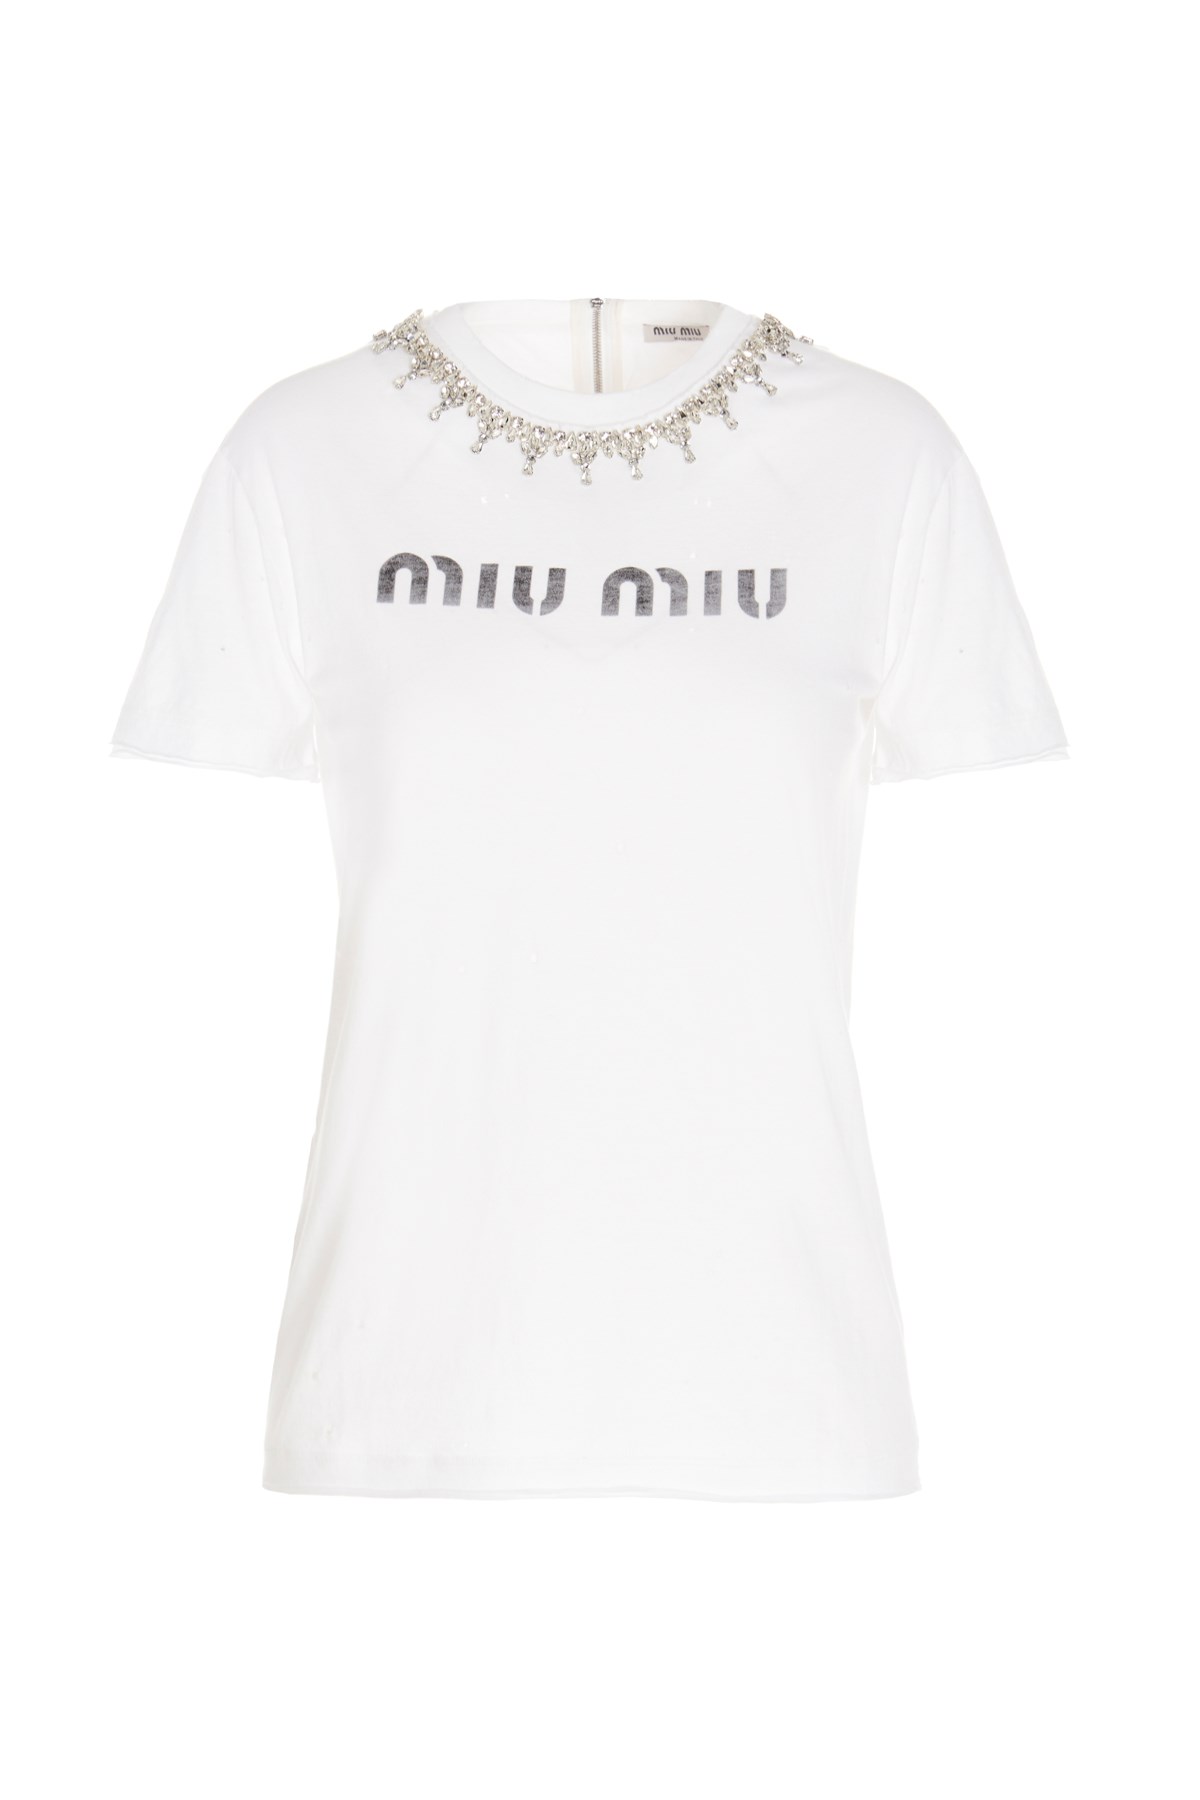 MIU MIU T-Shirt Mit Schmuck-Applikation